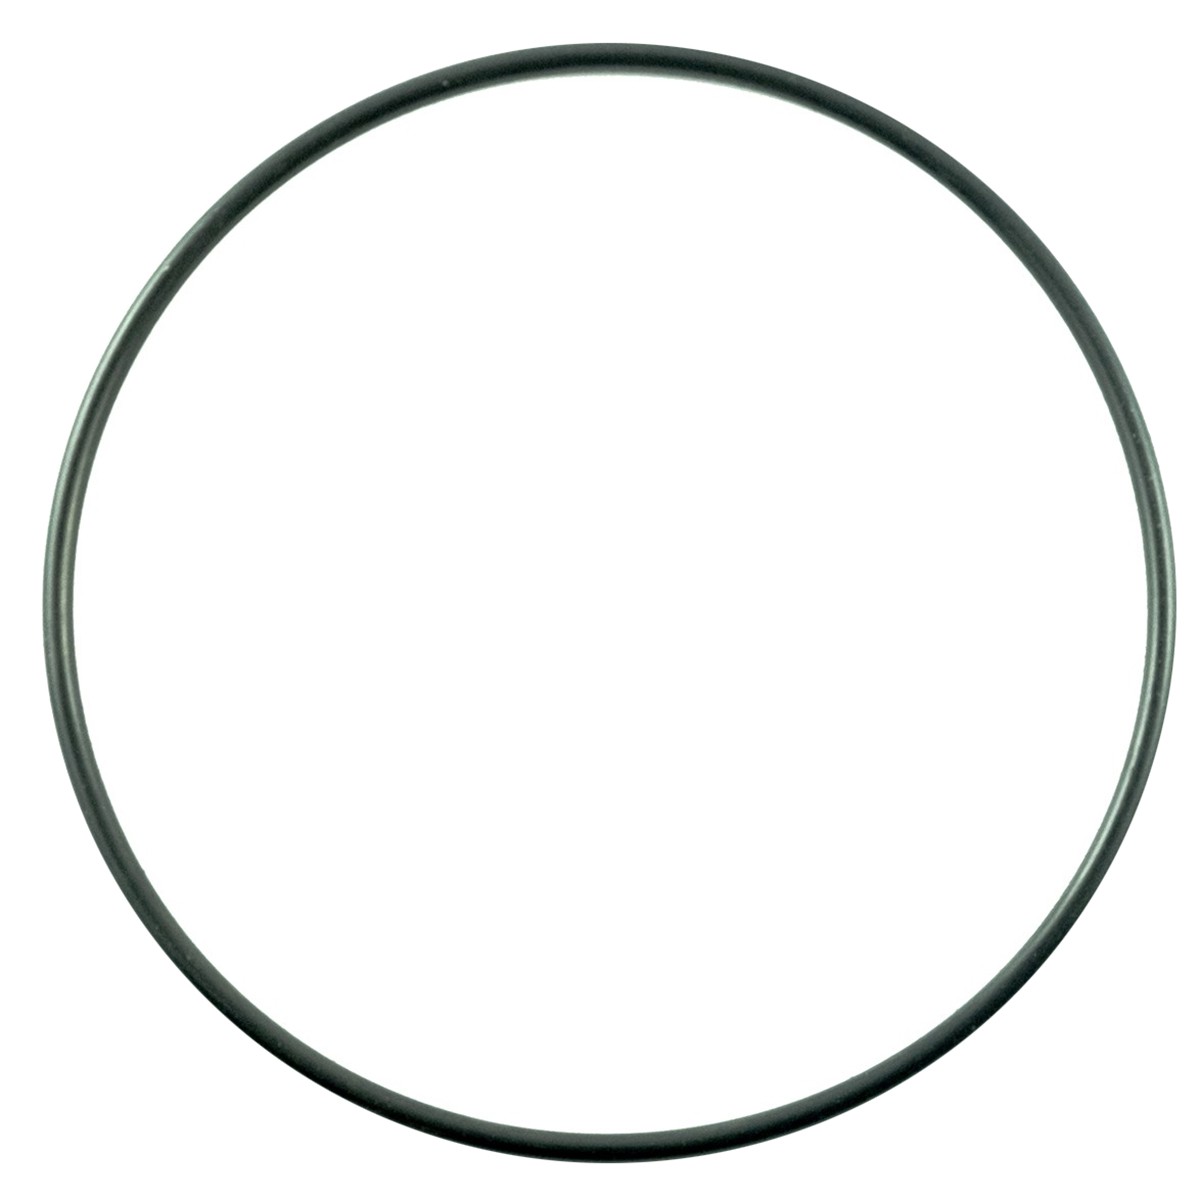 O-Ring Vorderachse / 3,10 x 104 mm / Kubota L3240/L4200/L4508 / 04811-51050 / 5-27-100-23